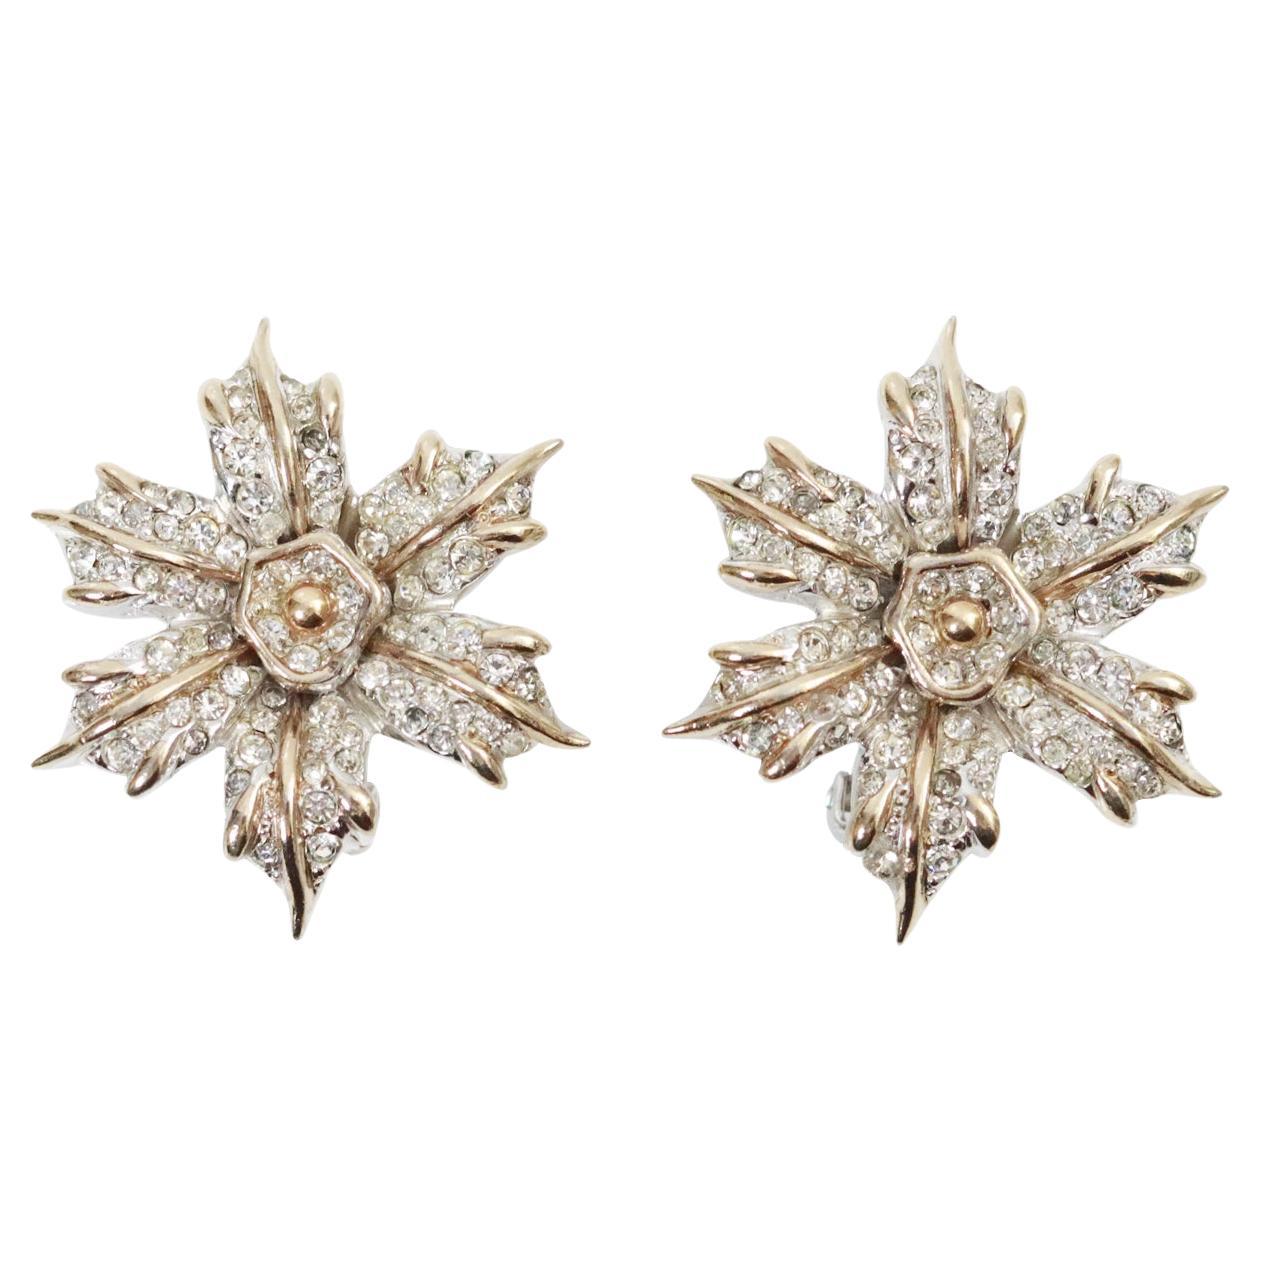 Vintage Halbe Silber und Goldfarbene Diamant-Blumen-Ohrringe, ca. 1960er Jahre